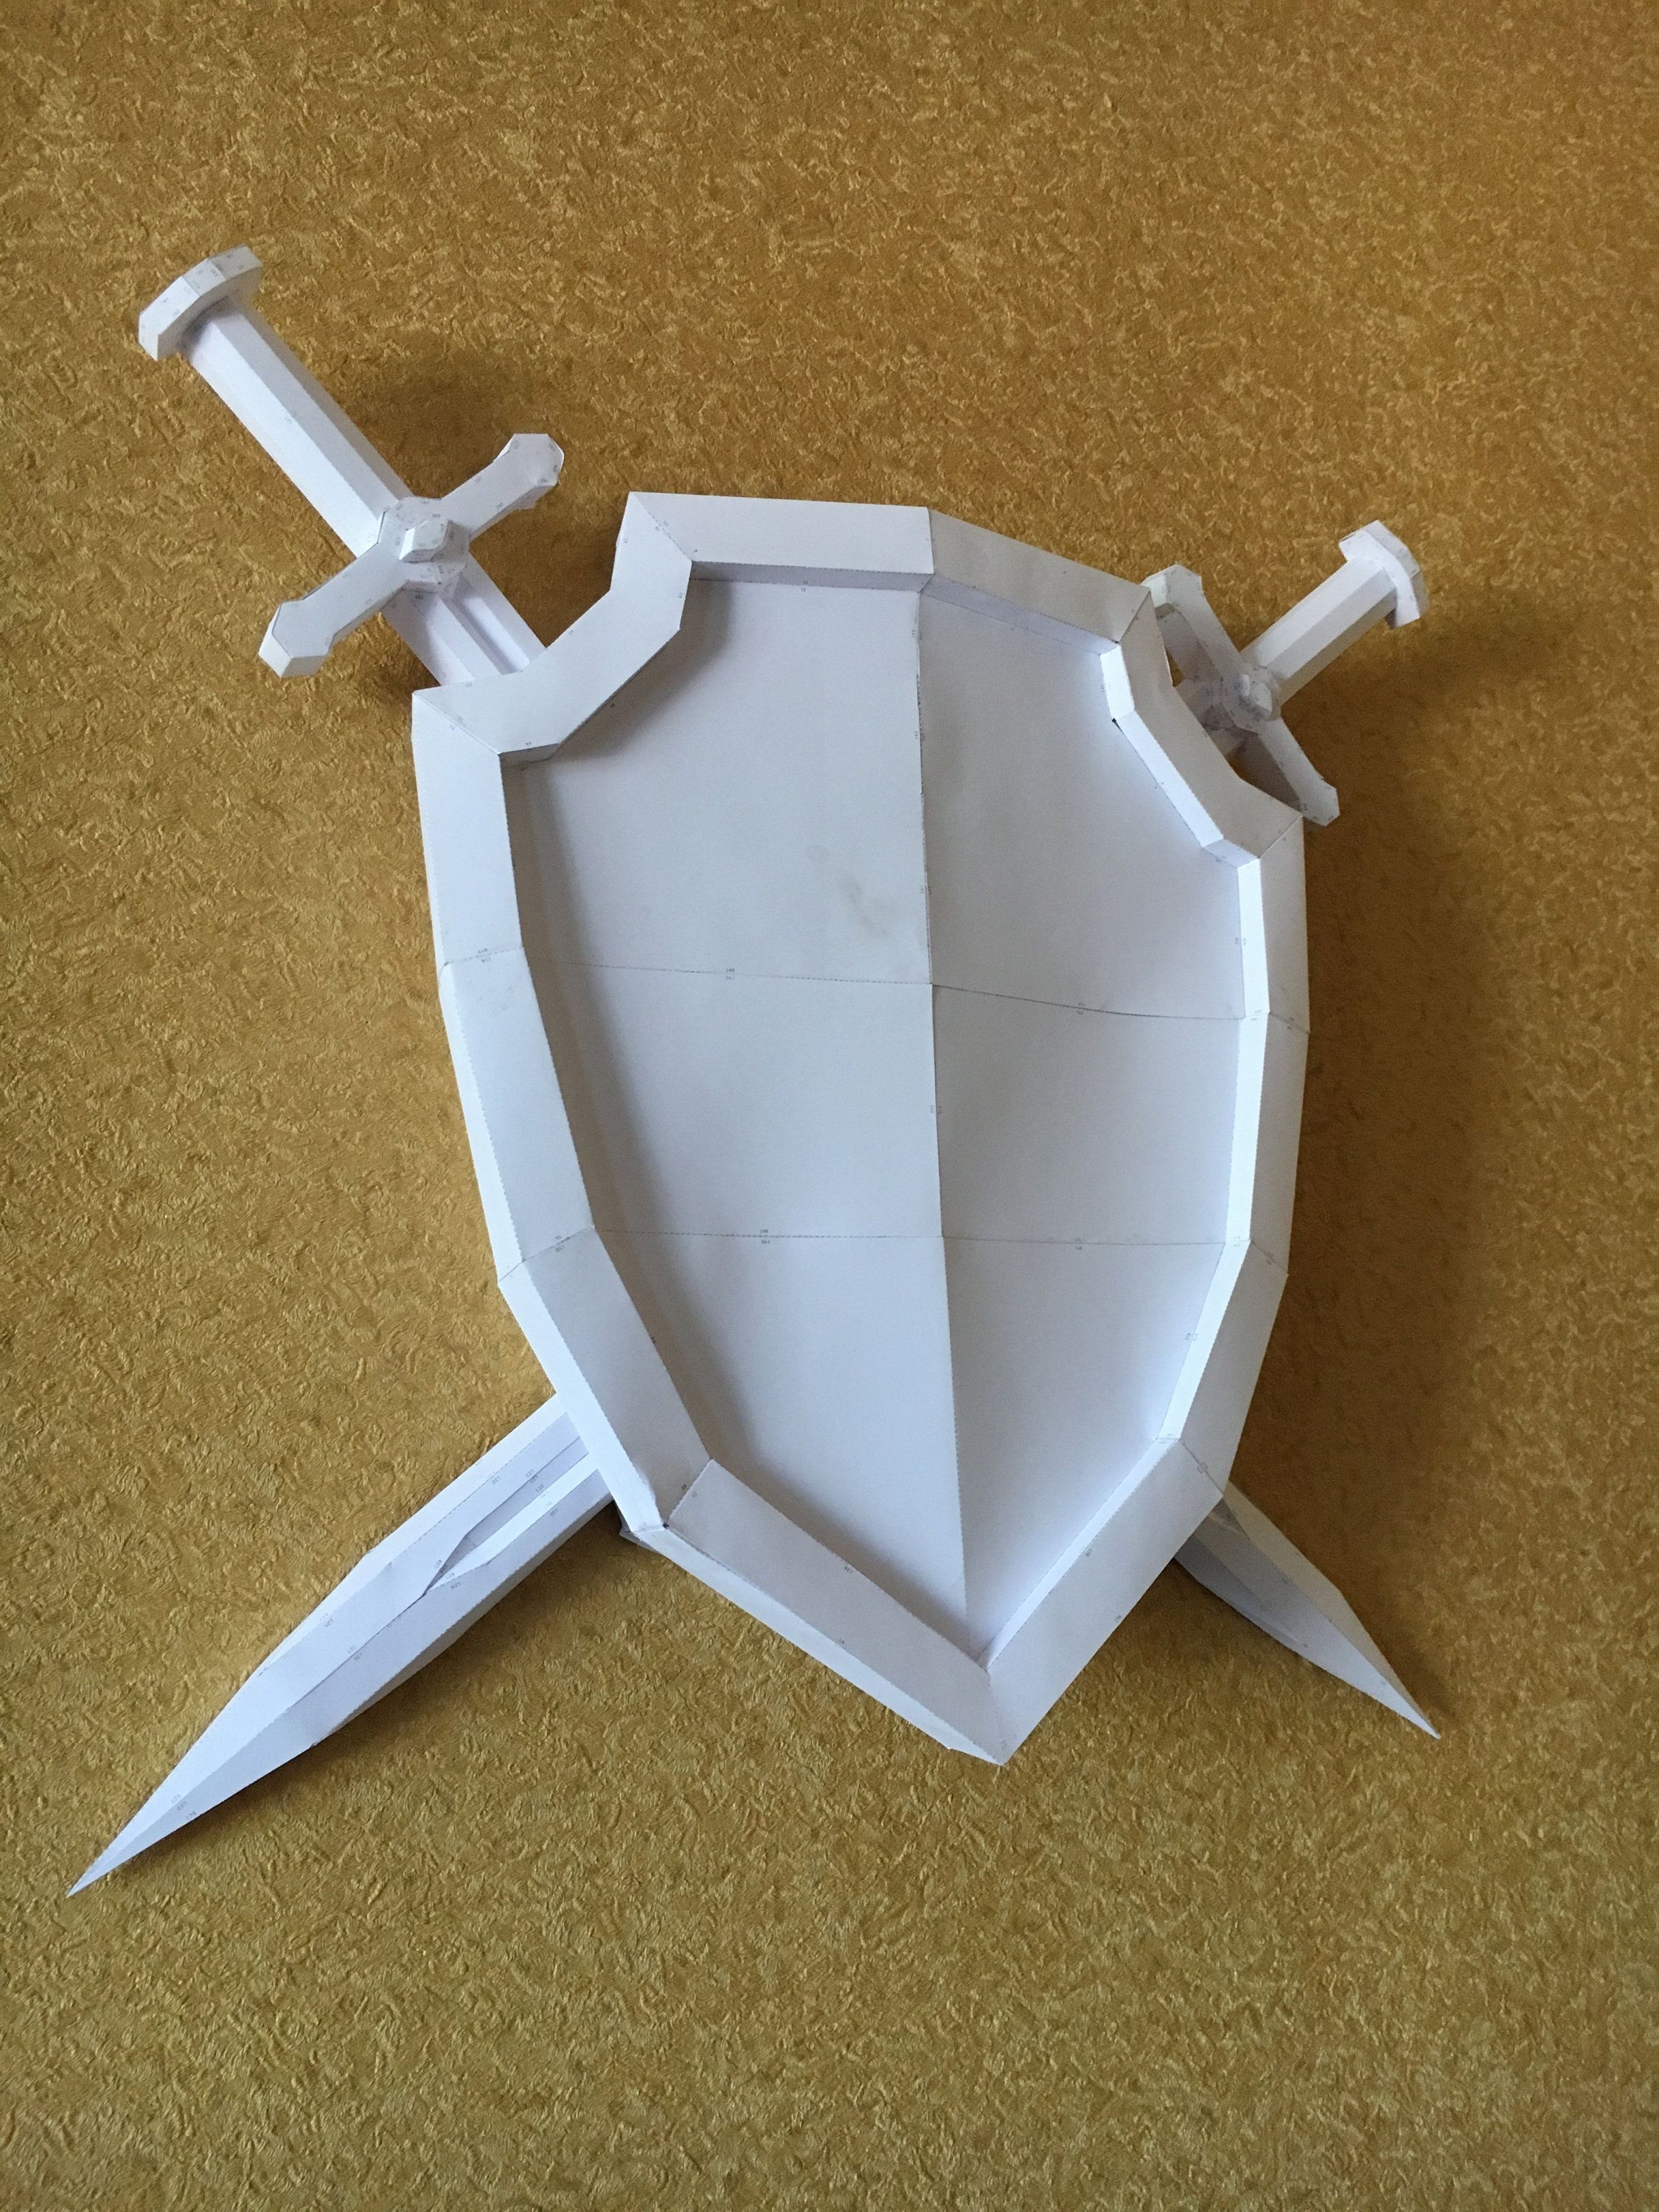 Papercraft Deer Head Sword Shield Diy Papercraft Model ÐÑÐ¼Ð°Ð¶Ð½ÑÐµ Ð¸Ð·Ð´ÐµÐ Ð¸Ñ